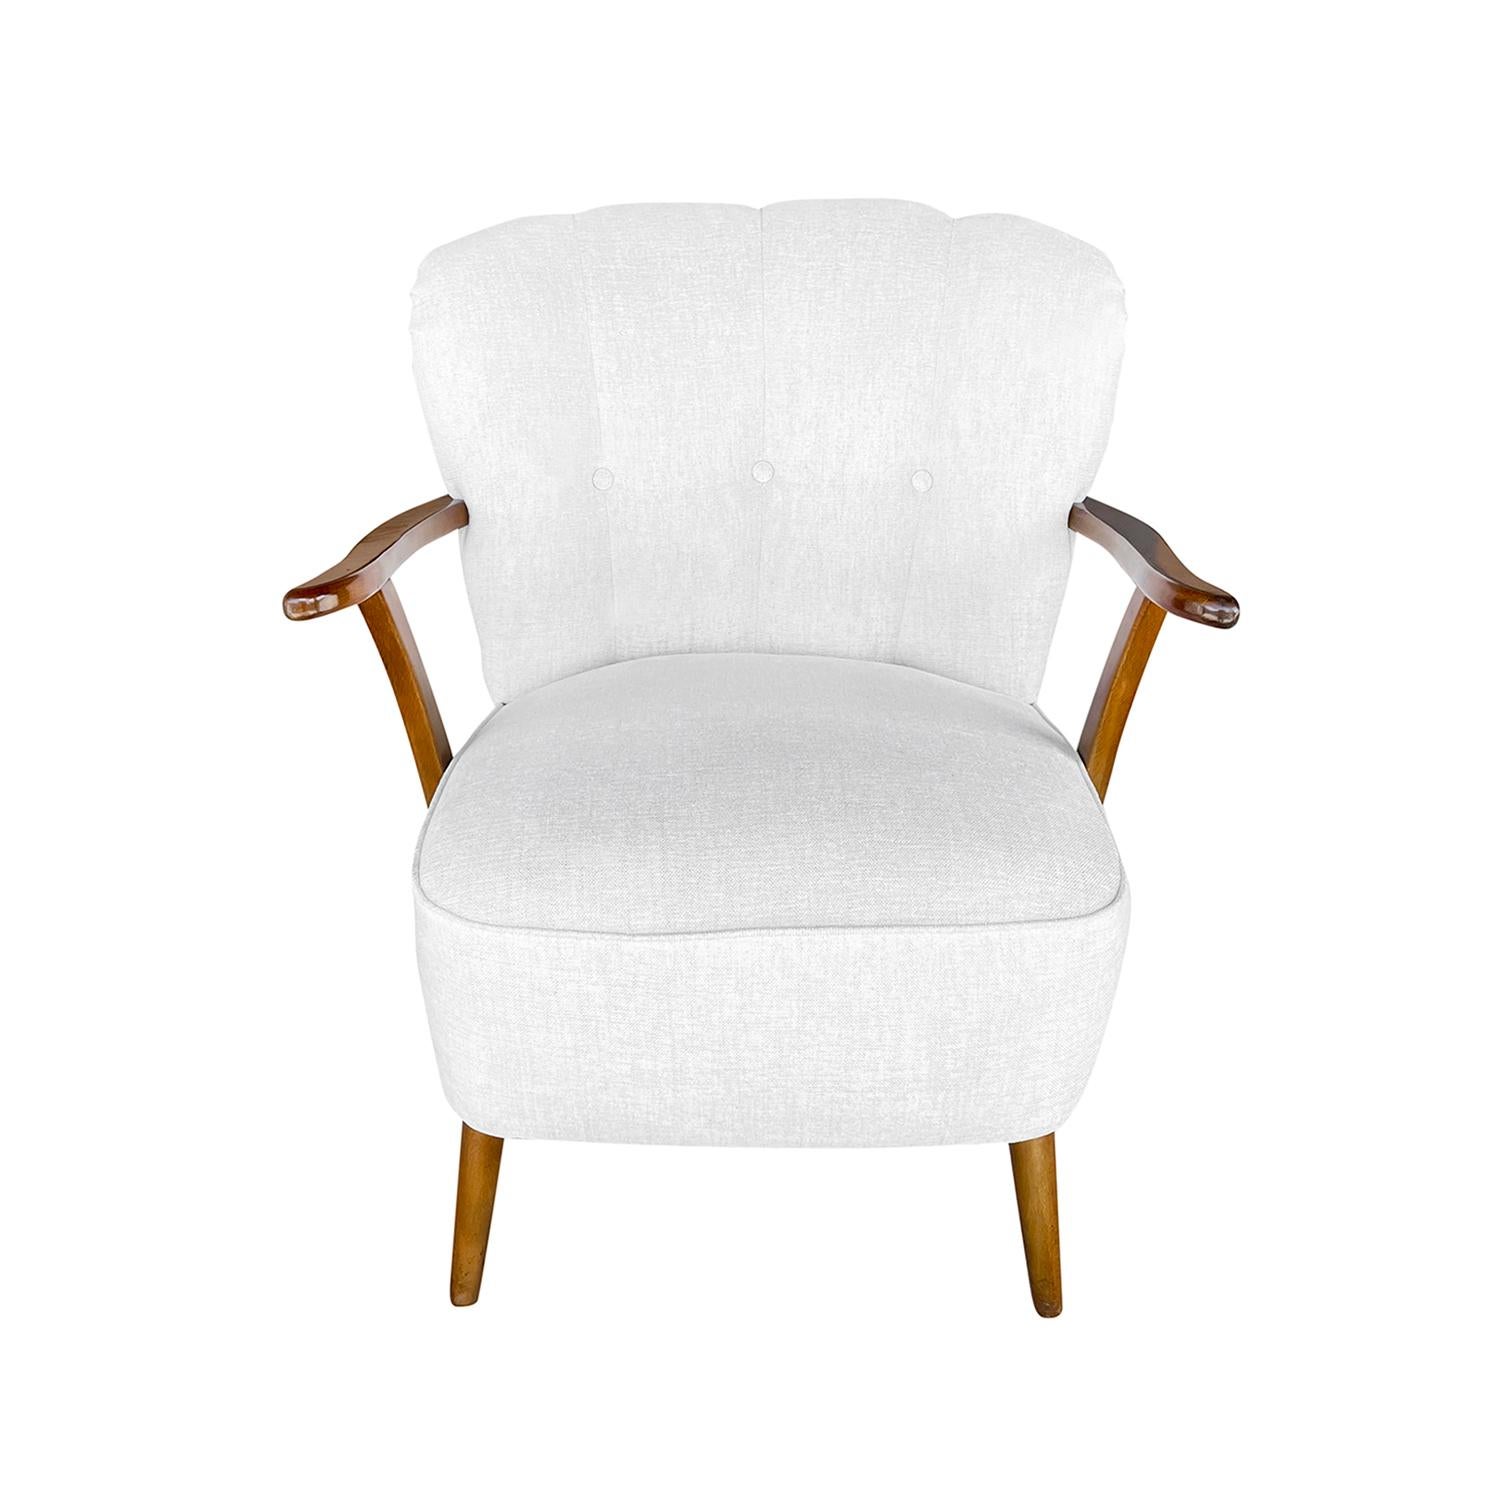 Petit fauteuil vintage Art Deco danois en bois de hêtre sculpté à la main, orné de têtes de clous en laiton, en bon état. Le dossier et les accoudoirs de la chaise d'appoint scandinave sont incurvés et soutenus par quatre pieds ronds en bois.